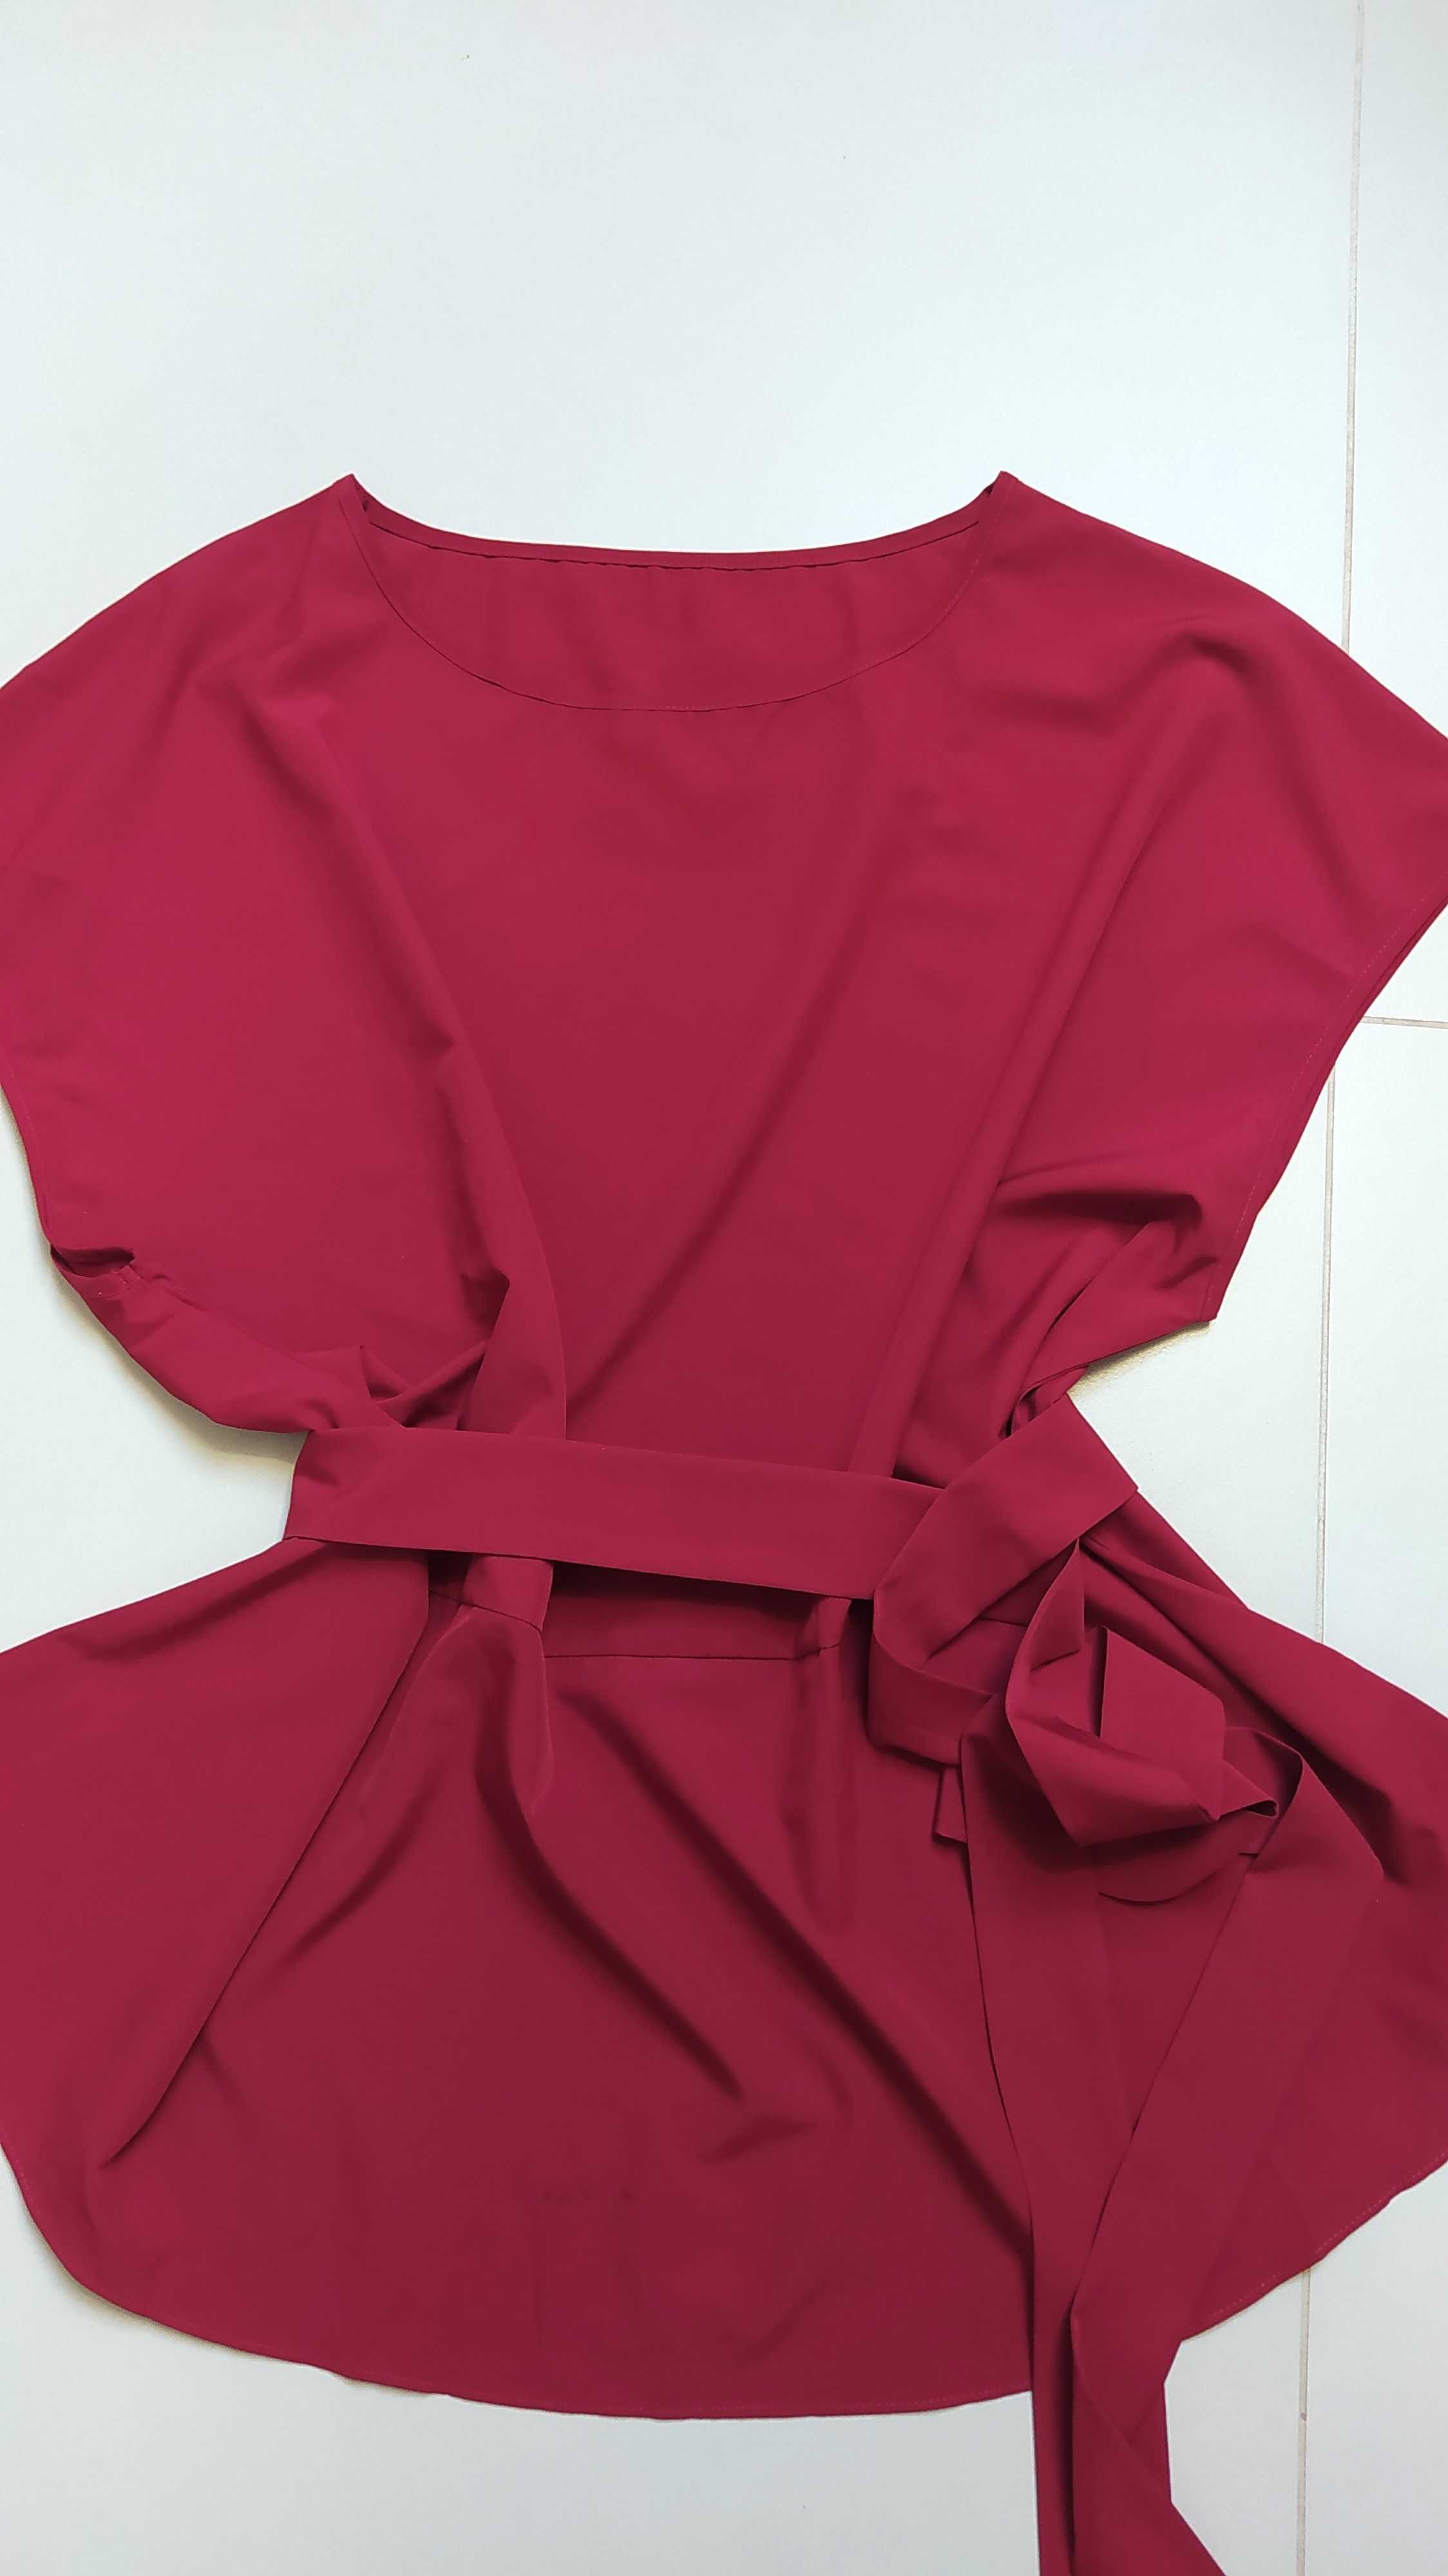 Prześliczna bordowa bluzka elegancka XL 2XL burgund krótki rękaw lato